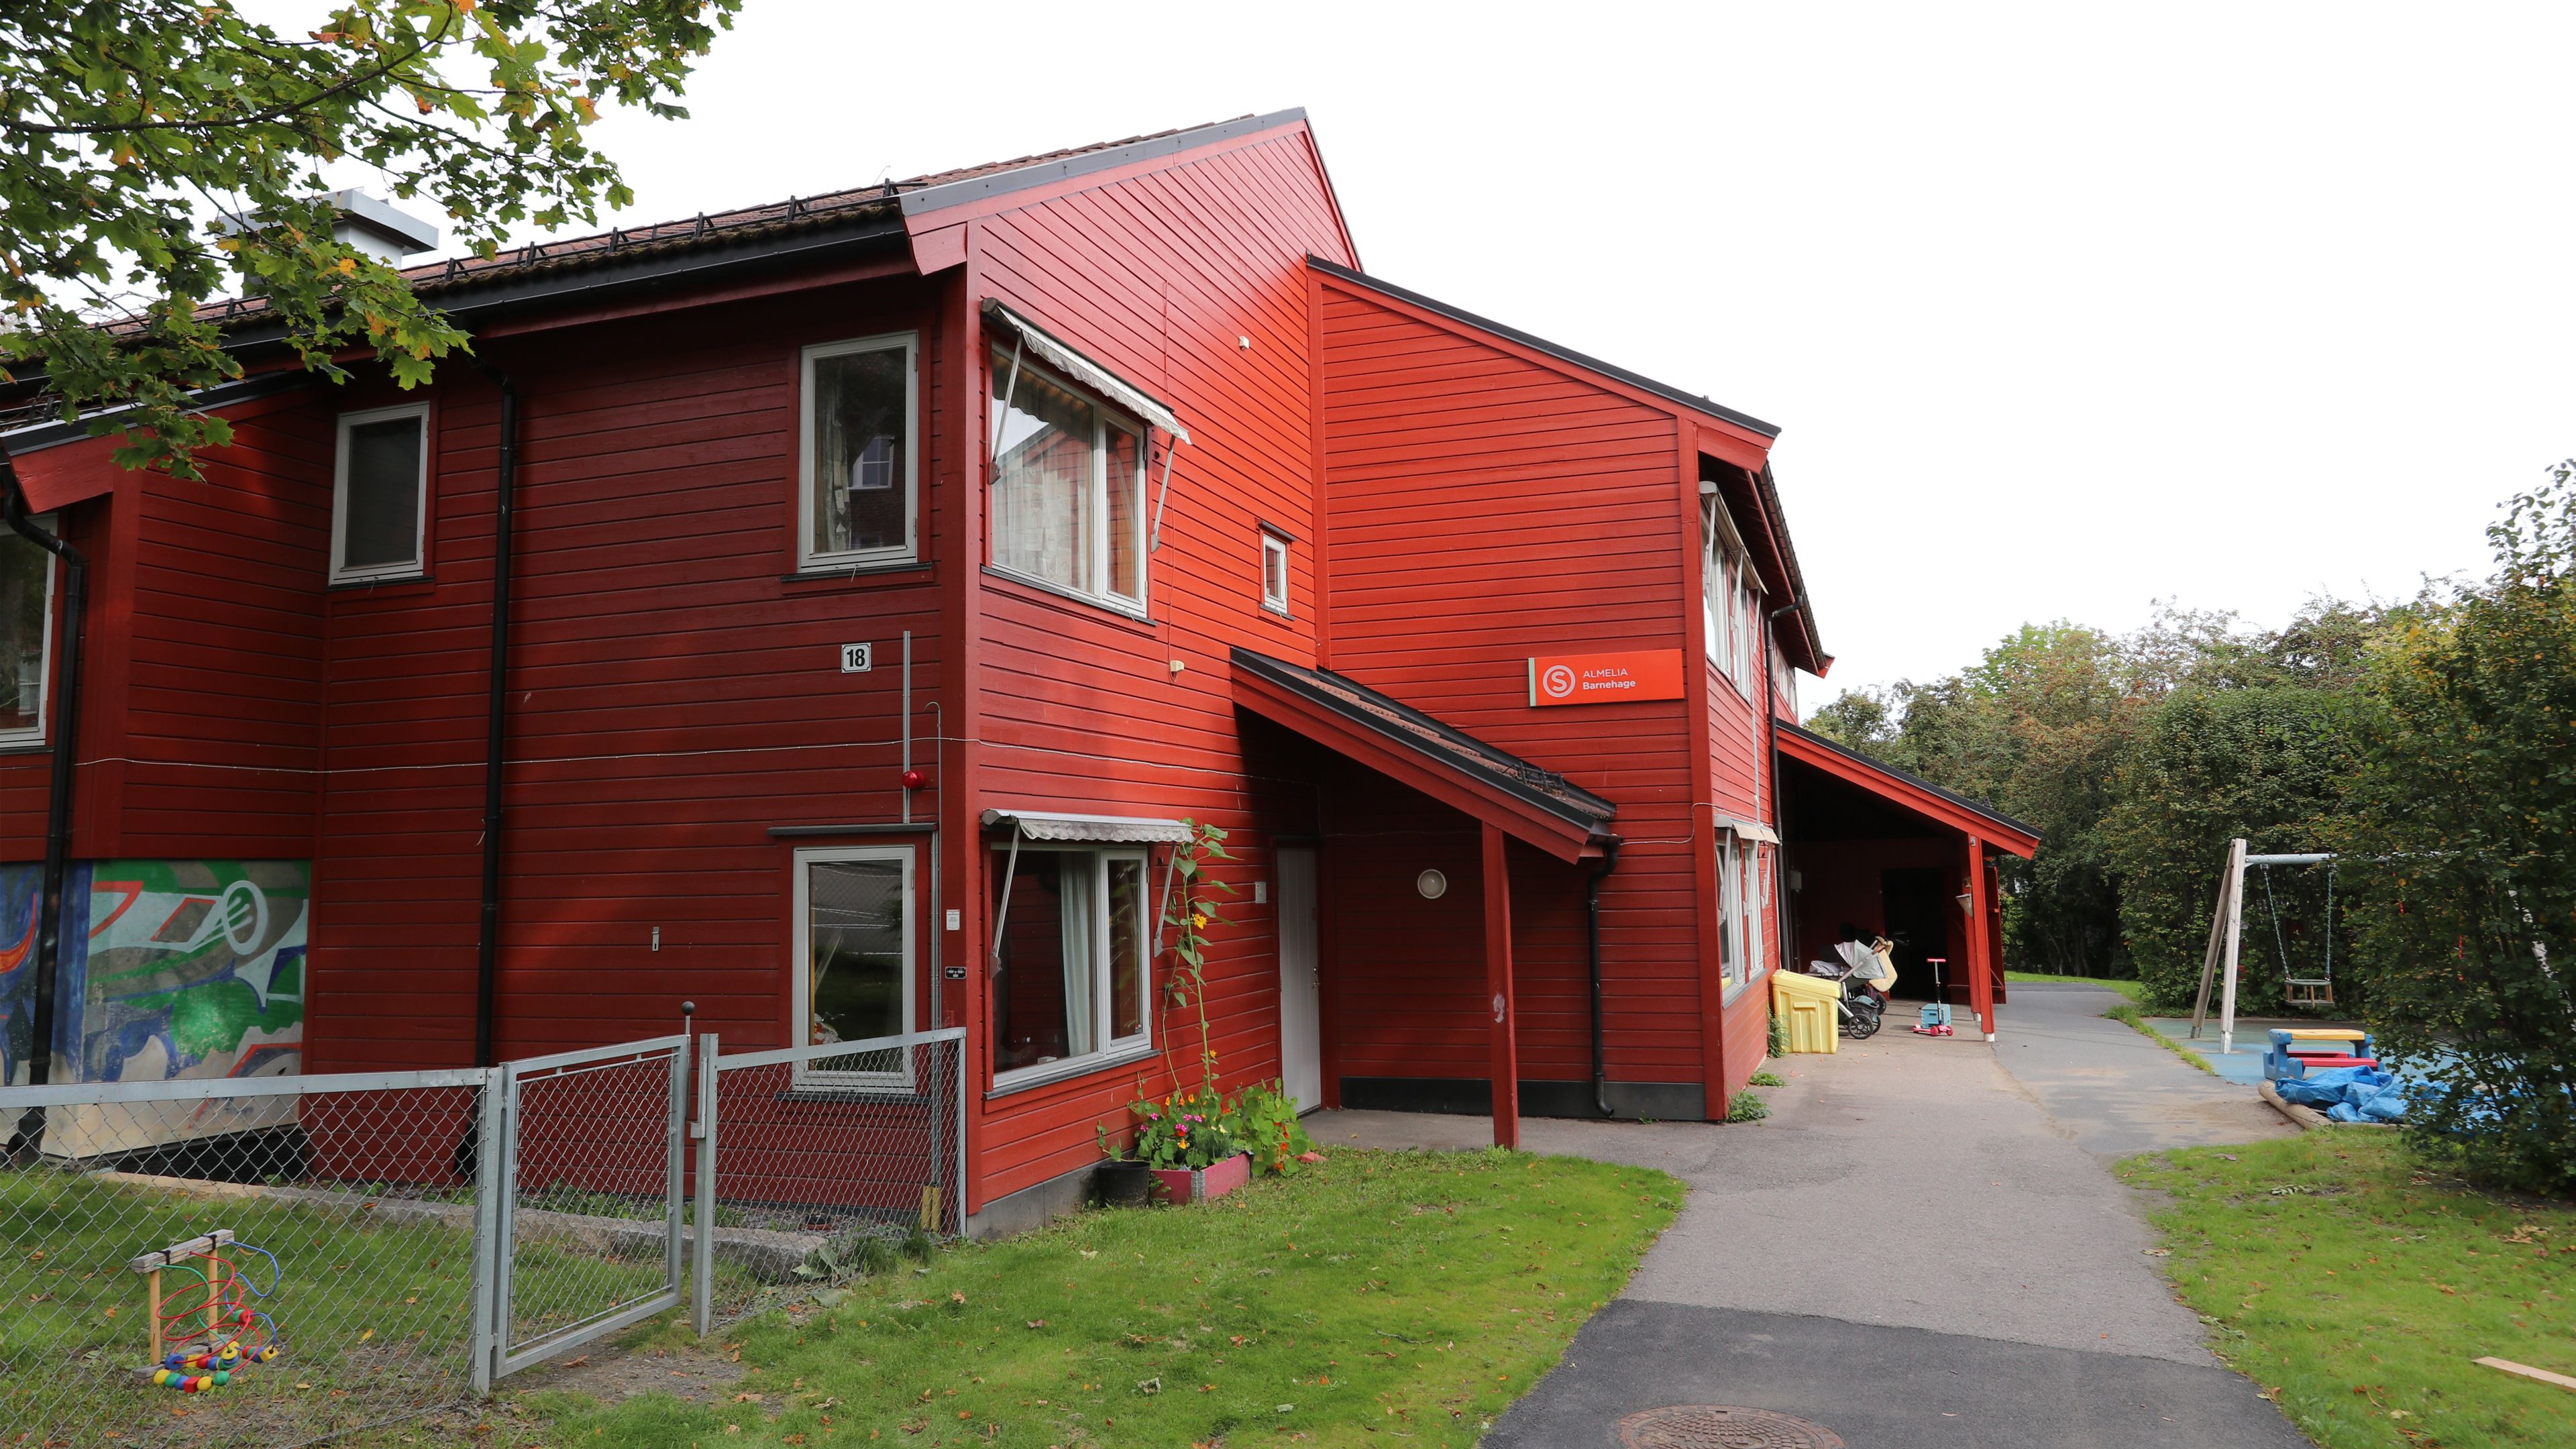 Et bilde av Almelia barnehage. Et rødt hus med lekeplass rundt.